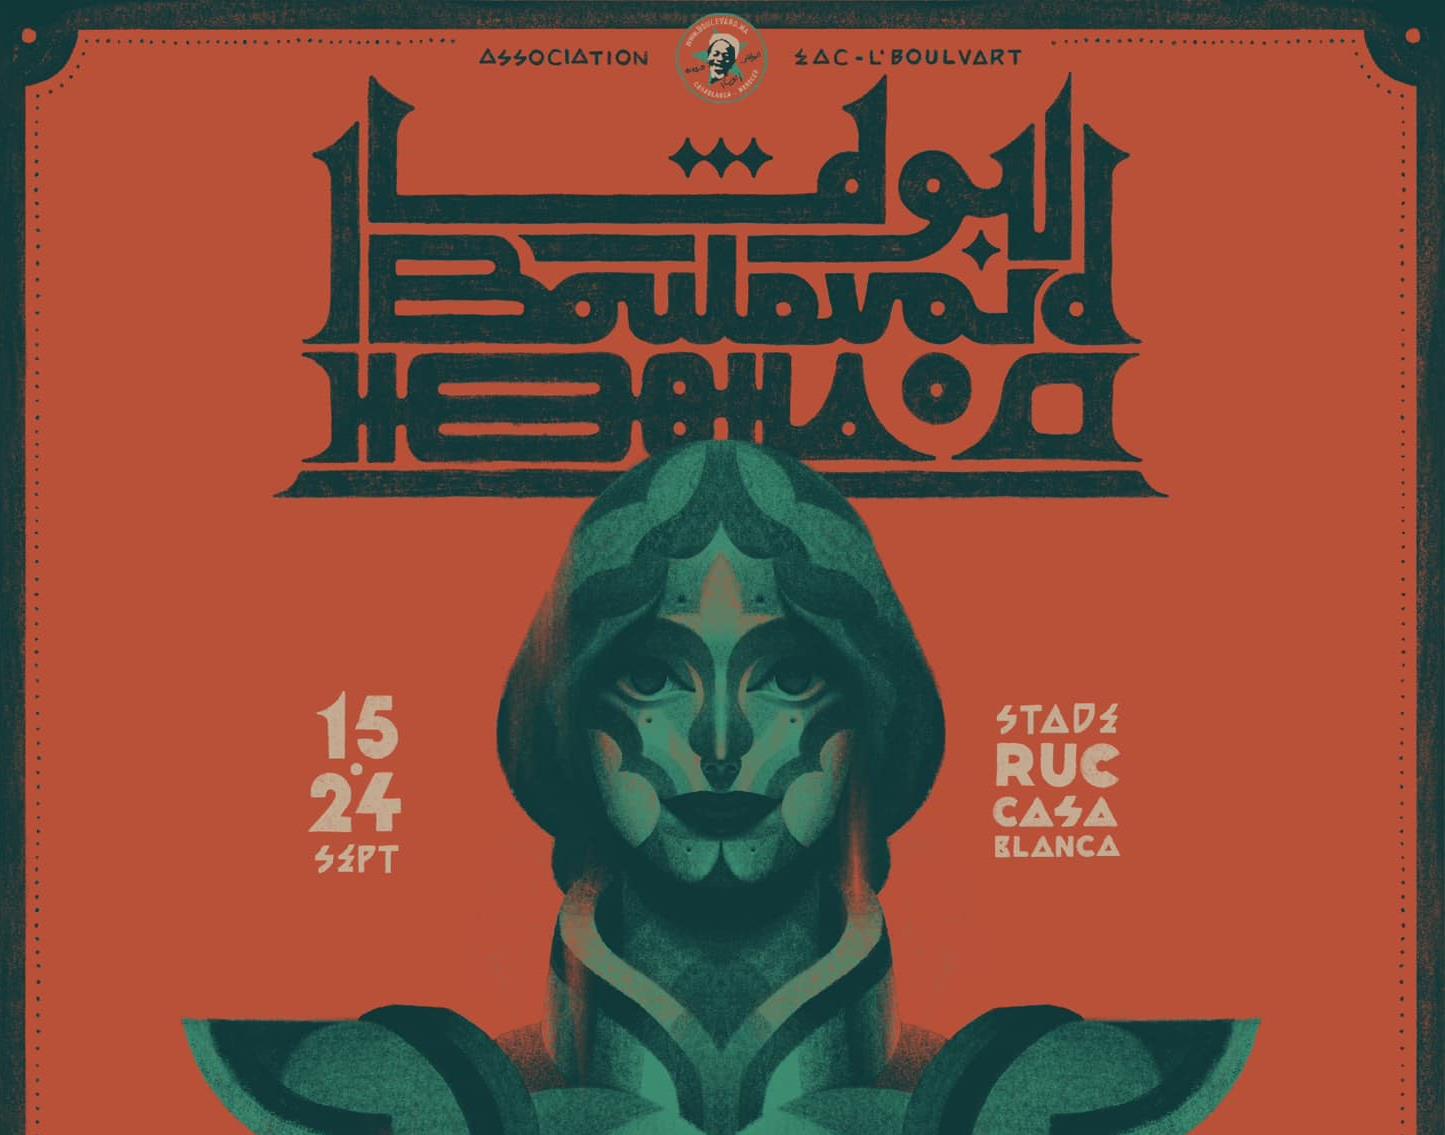 Festival L'Boulevard de Casablanca: 39 groupes de musique au menu de la 21ème édition